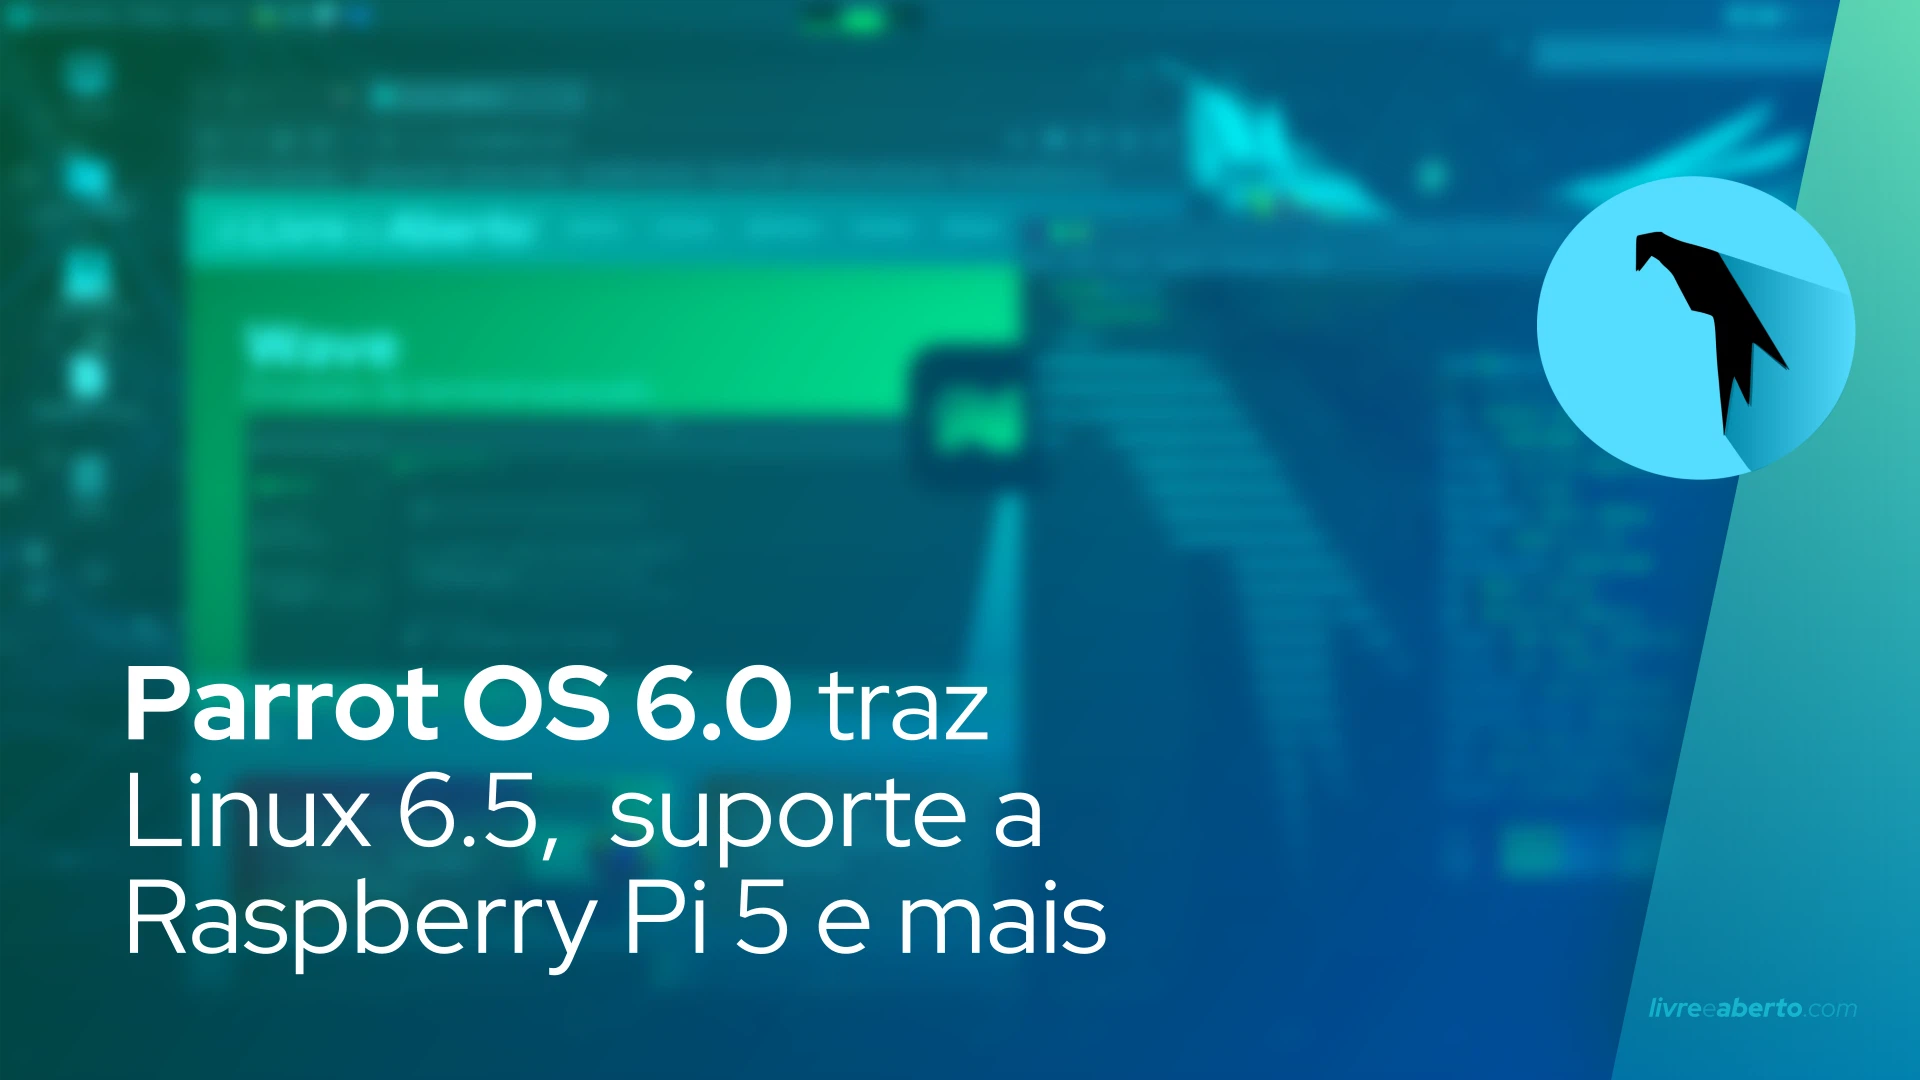 Parrot OS 6.0 traz Linux 6.5, suporte a Raspberry Pi 5 e mais